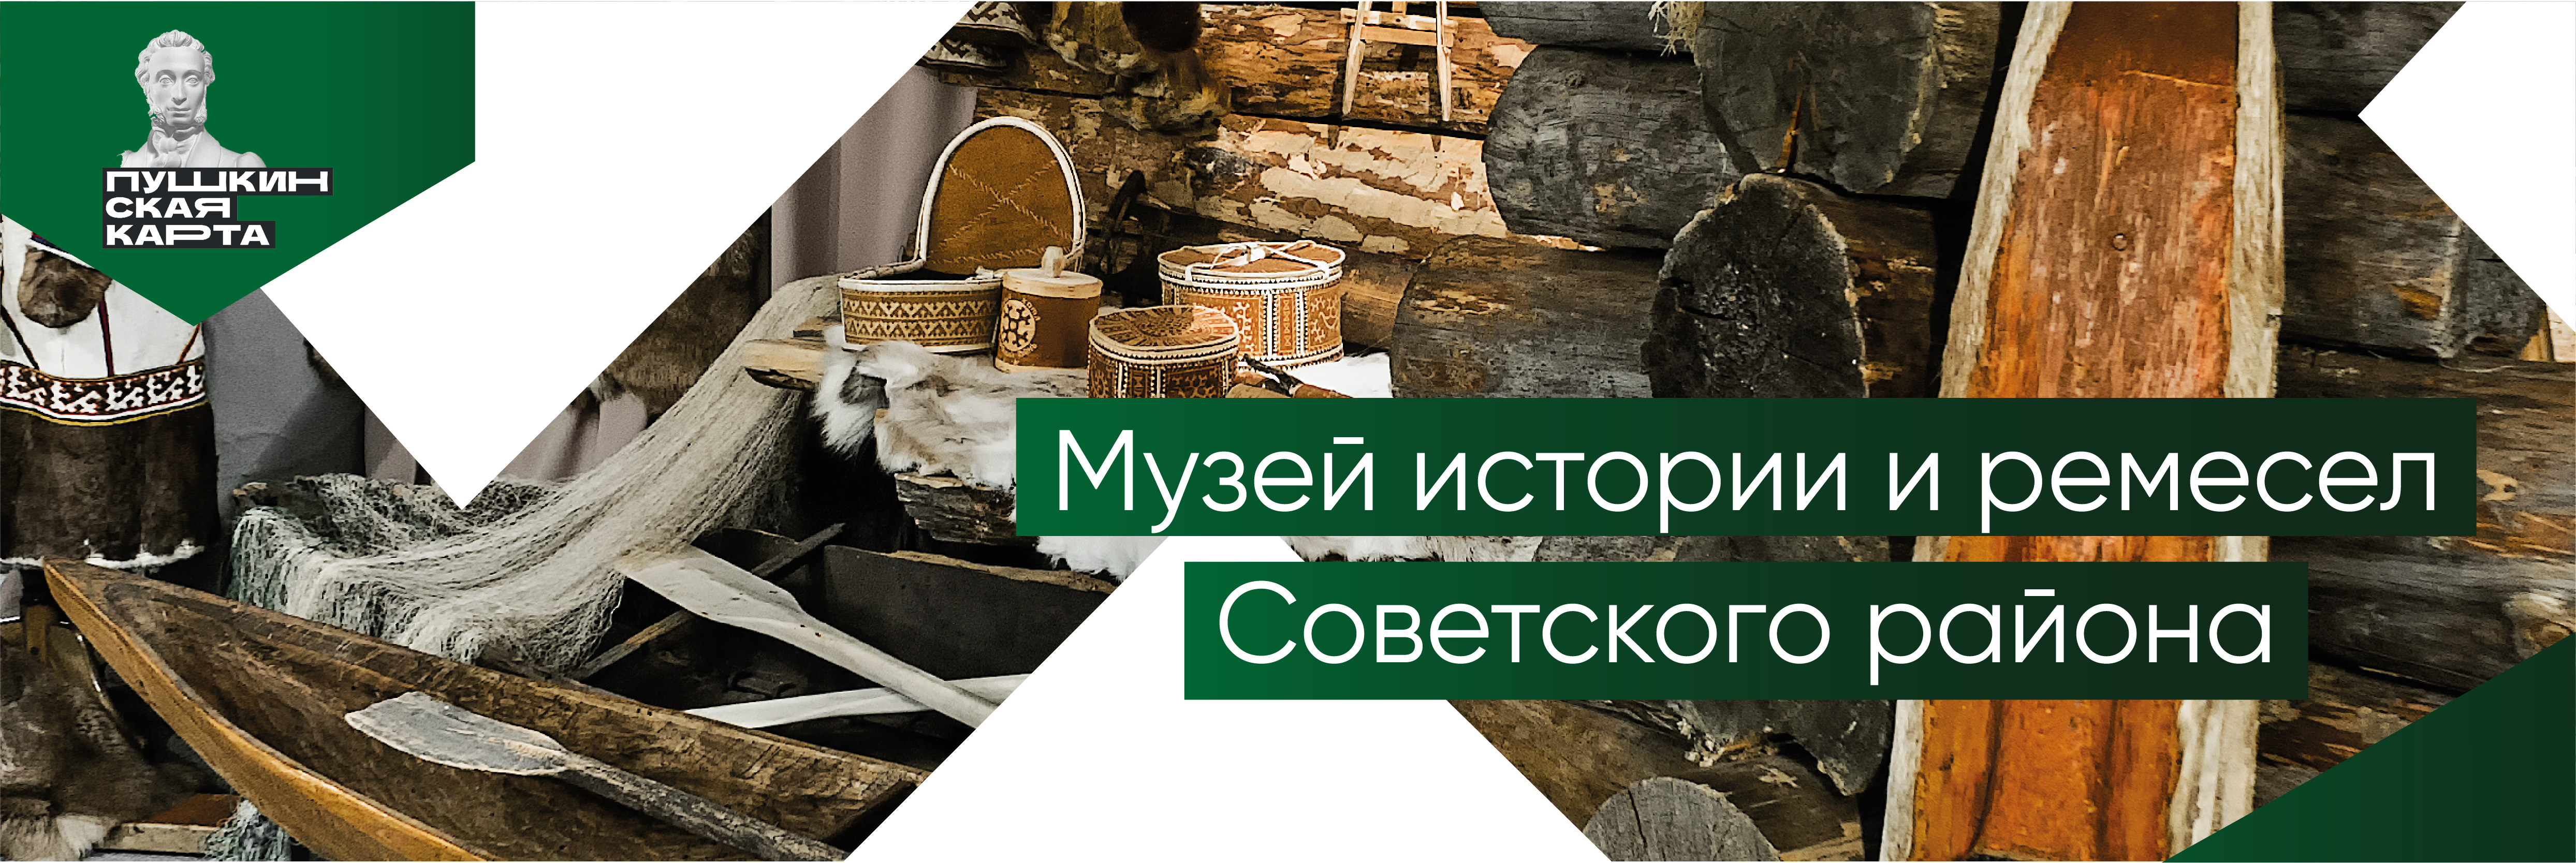 Музей истории и ремесел Советского района